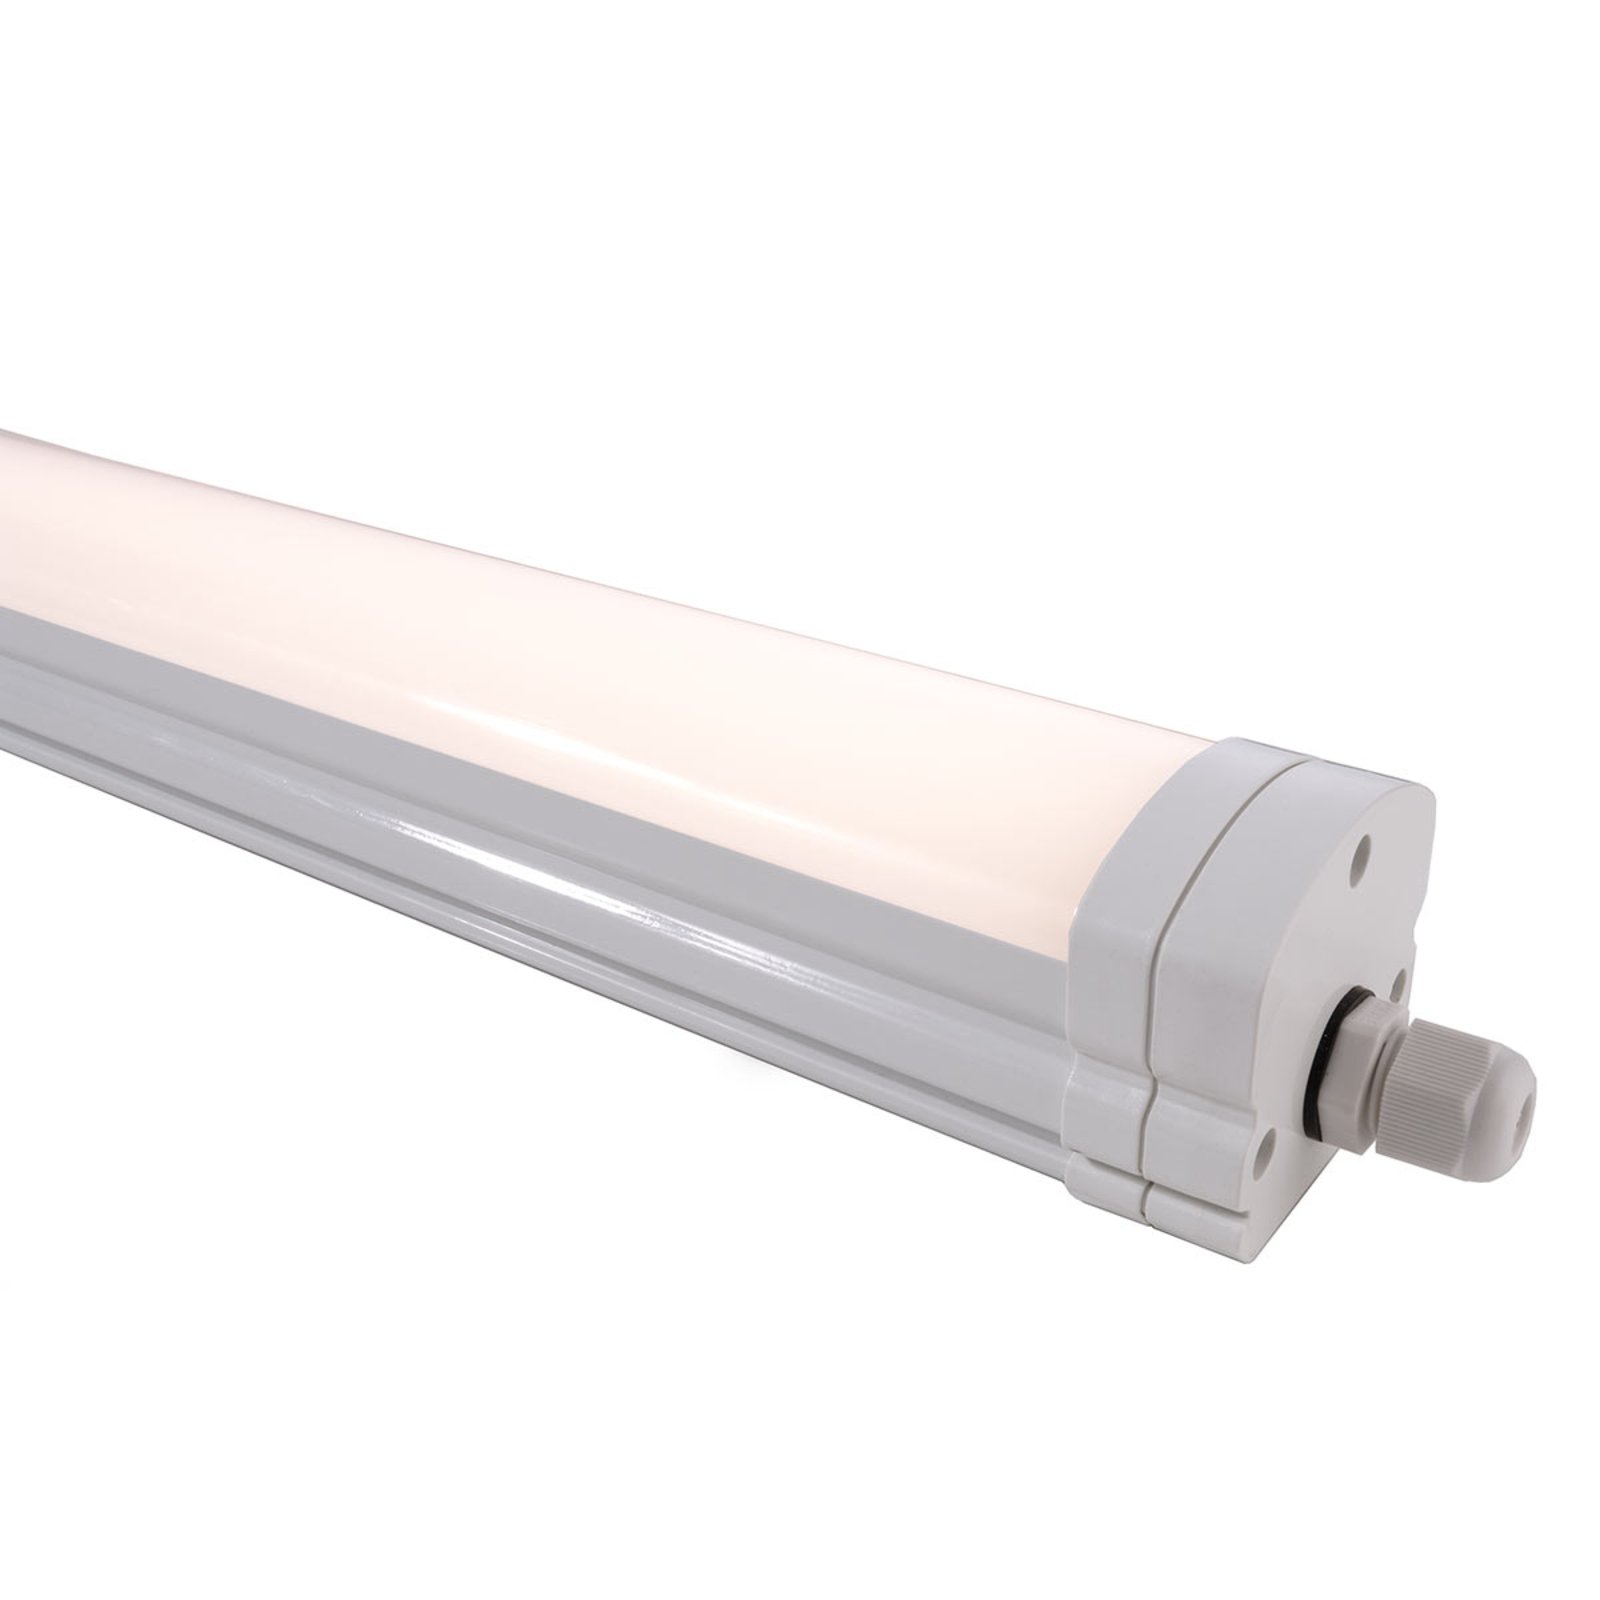 Long Tri Proof LED moisture-proof light 43.6 W